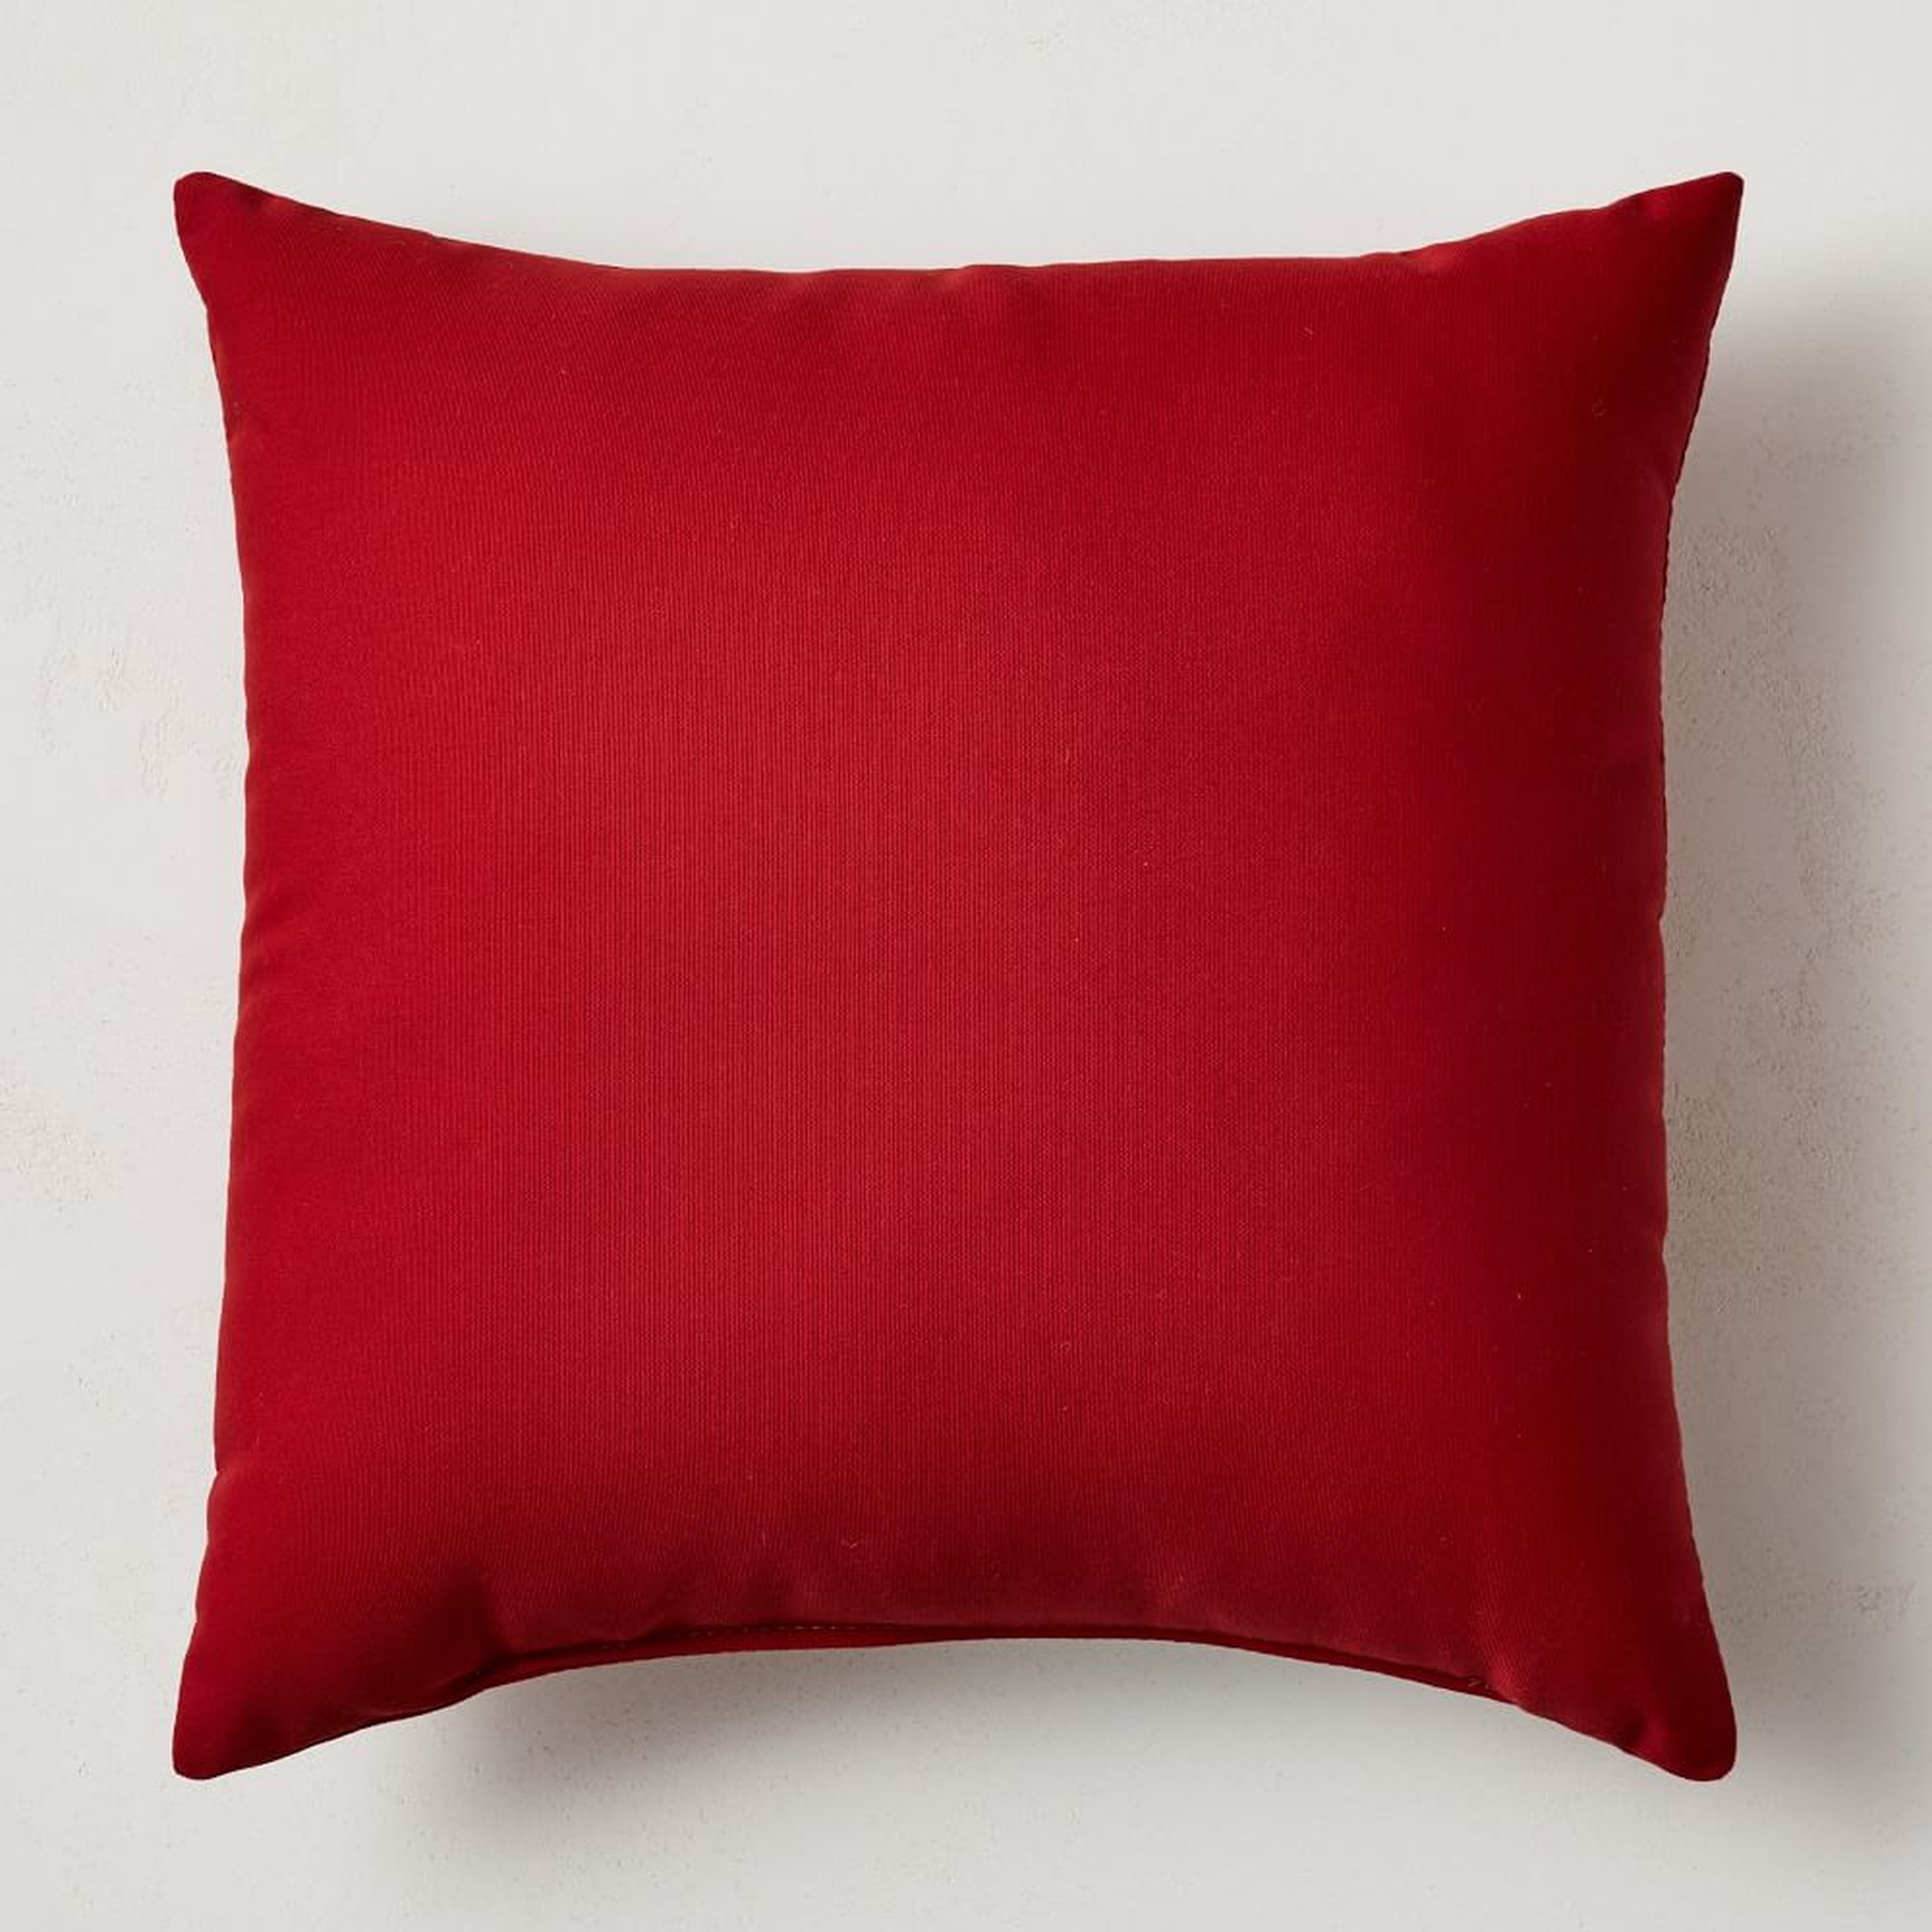 Sunbrella Indoor/Outdoor Canvas Pillow, 20"x20", Jockey Red - West Elm